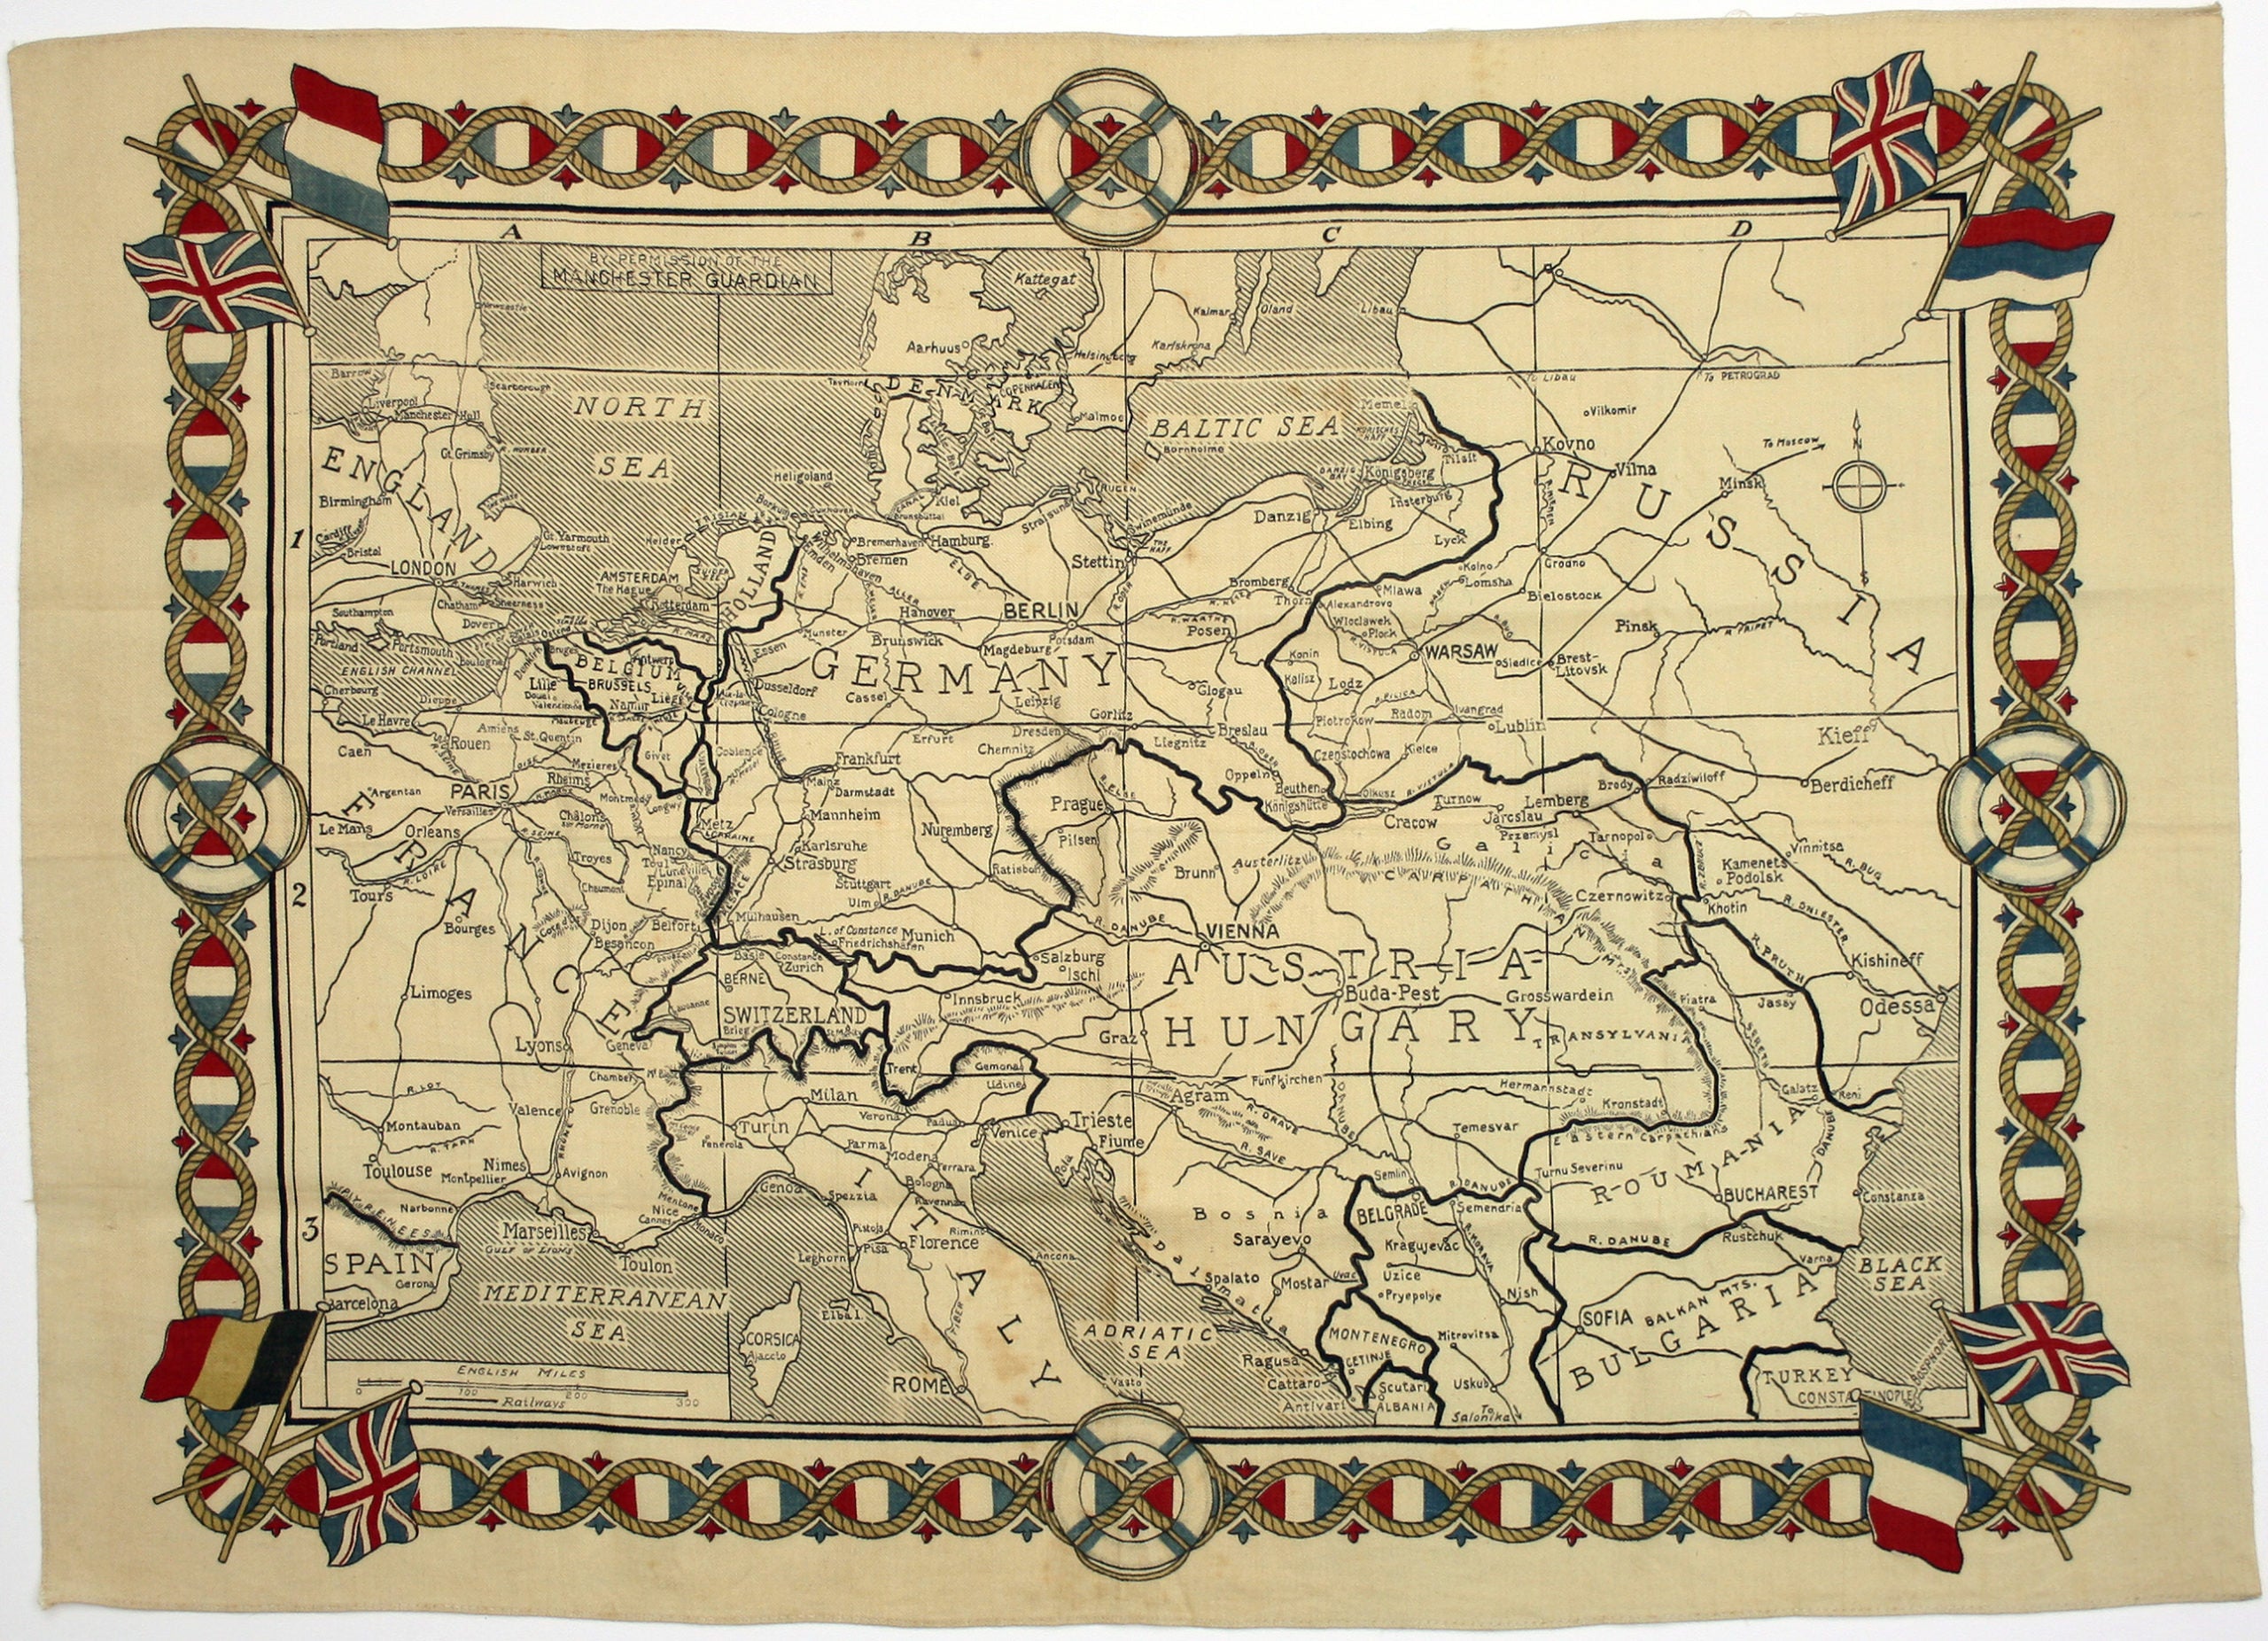 Great War Souvenir Map of Europe